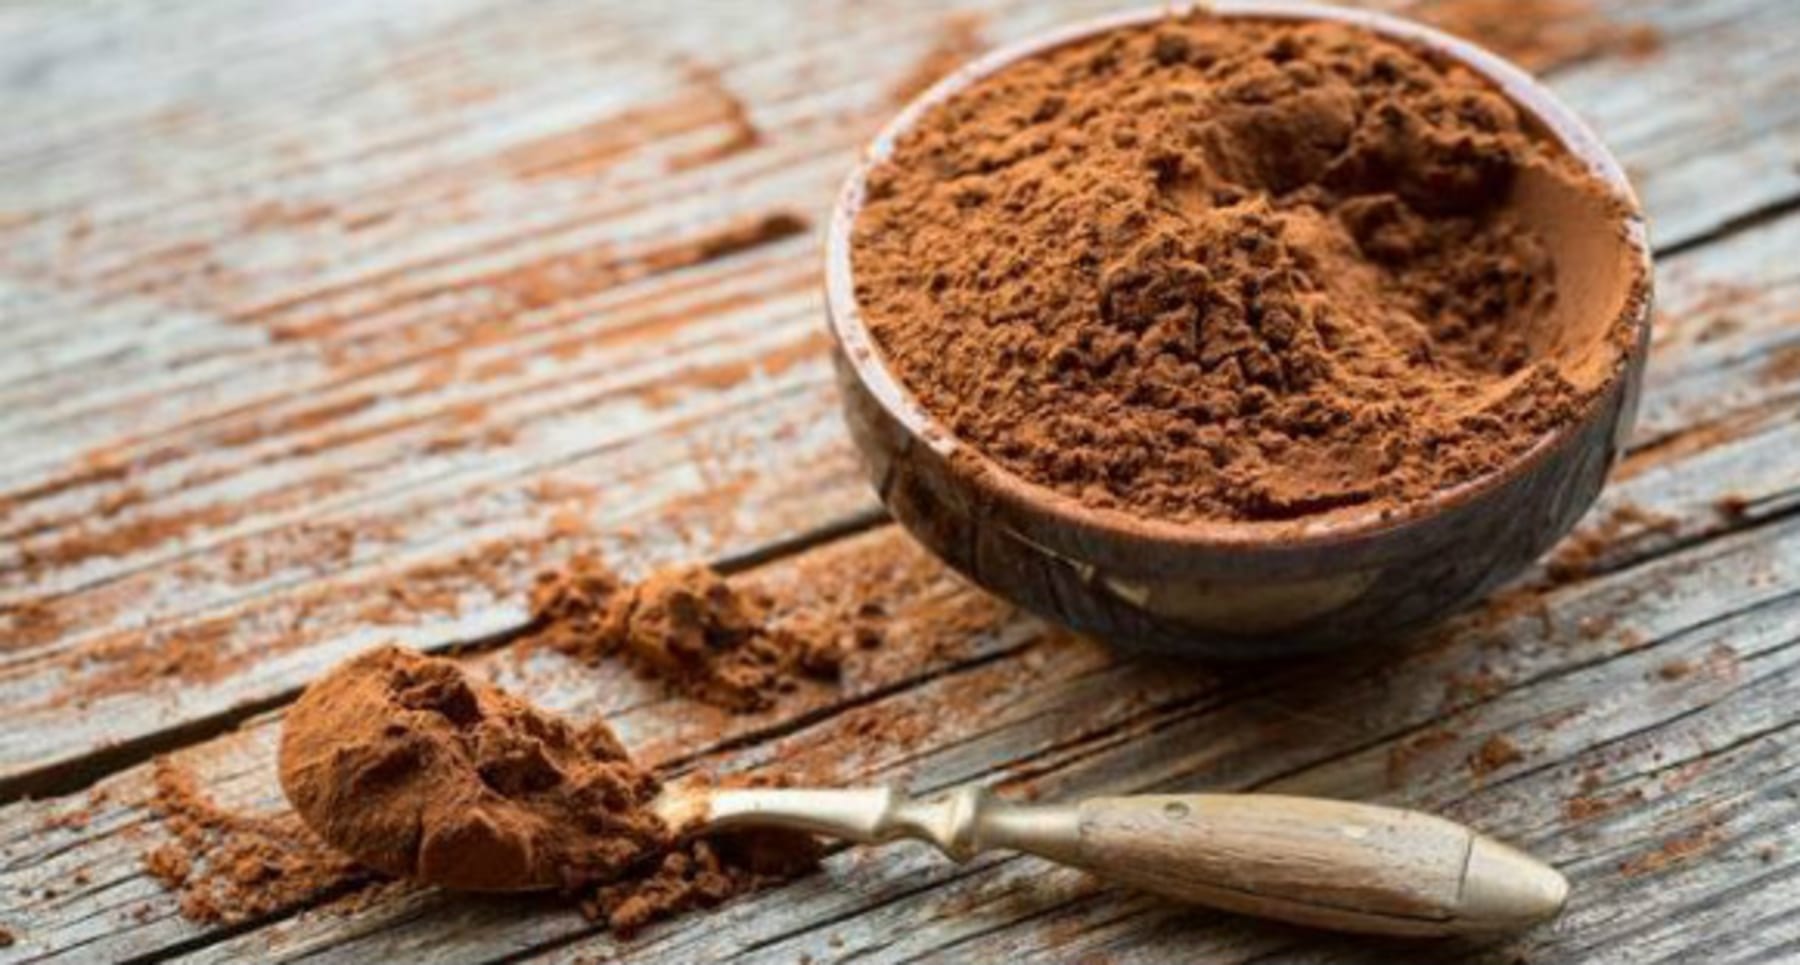 Ziarno kakaowca | Kakao | Zdrowie na wyciągnięcie ręki | Słodkie witaminy